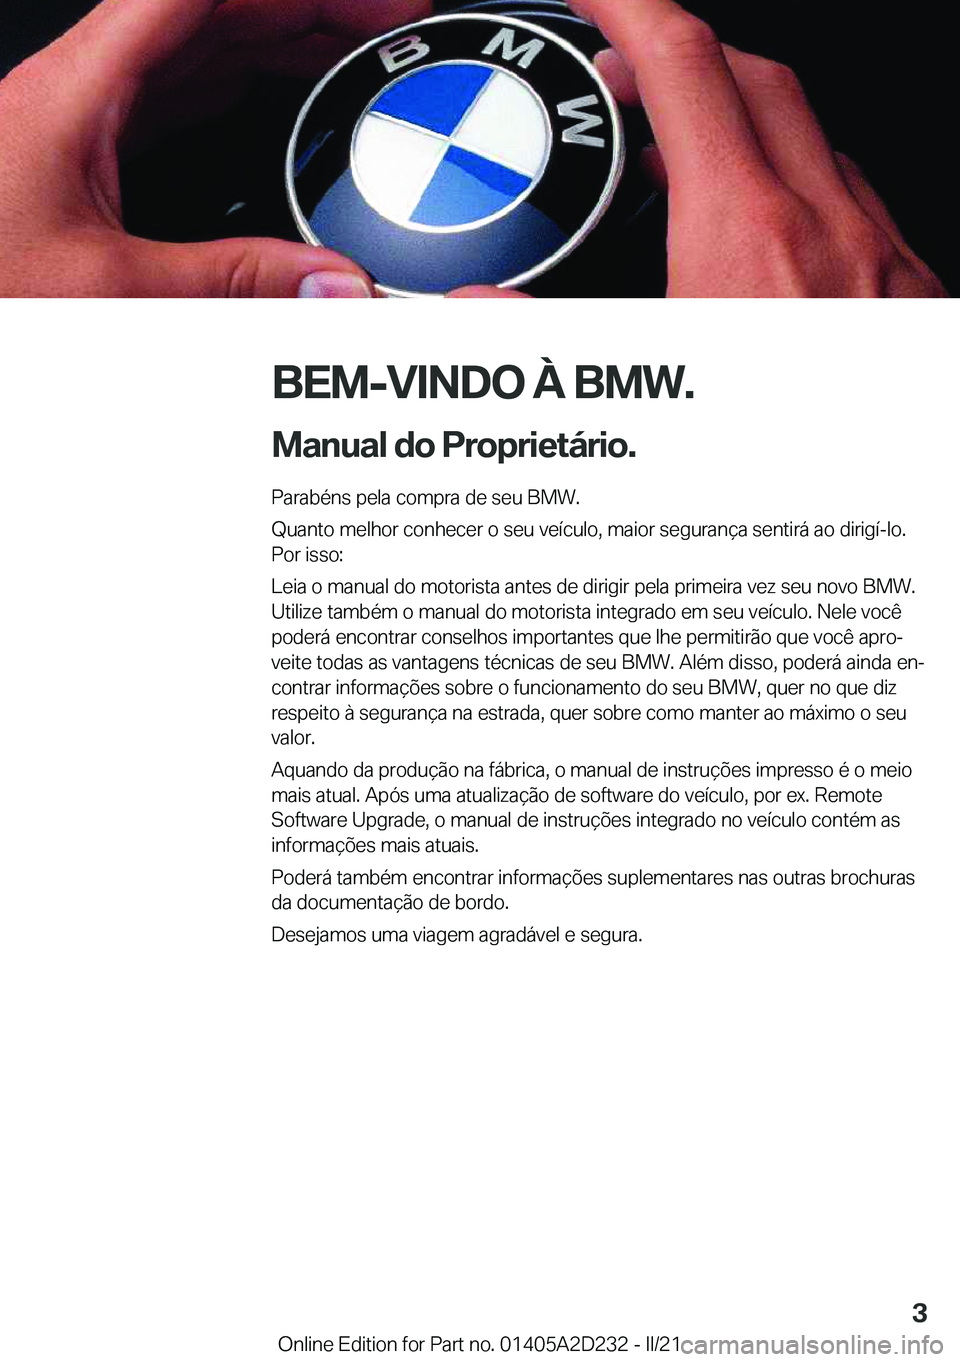 BMW X6 M 2021  Manual do condutor (in Portuguese) �B�E�M�-�V�I�N�D�O��À��B�M�W�.
�M�a�n�u�a�l��d�o��P�r�o�p�r�i�e�t�á�r�i�o�. �P�a�r�a�b�é�n�s��p�e�l�a��c�o�m�p�r�a��d�e��s�e�u��B�M�W�.
�Q�u�a�n�t�o��m�e�l�h�o�r��c�o�n�h�e�c�e�r��o��s